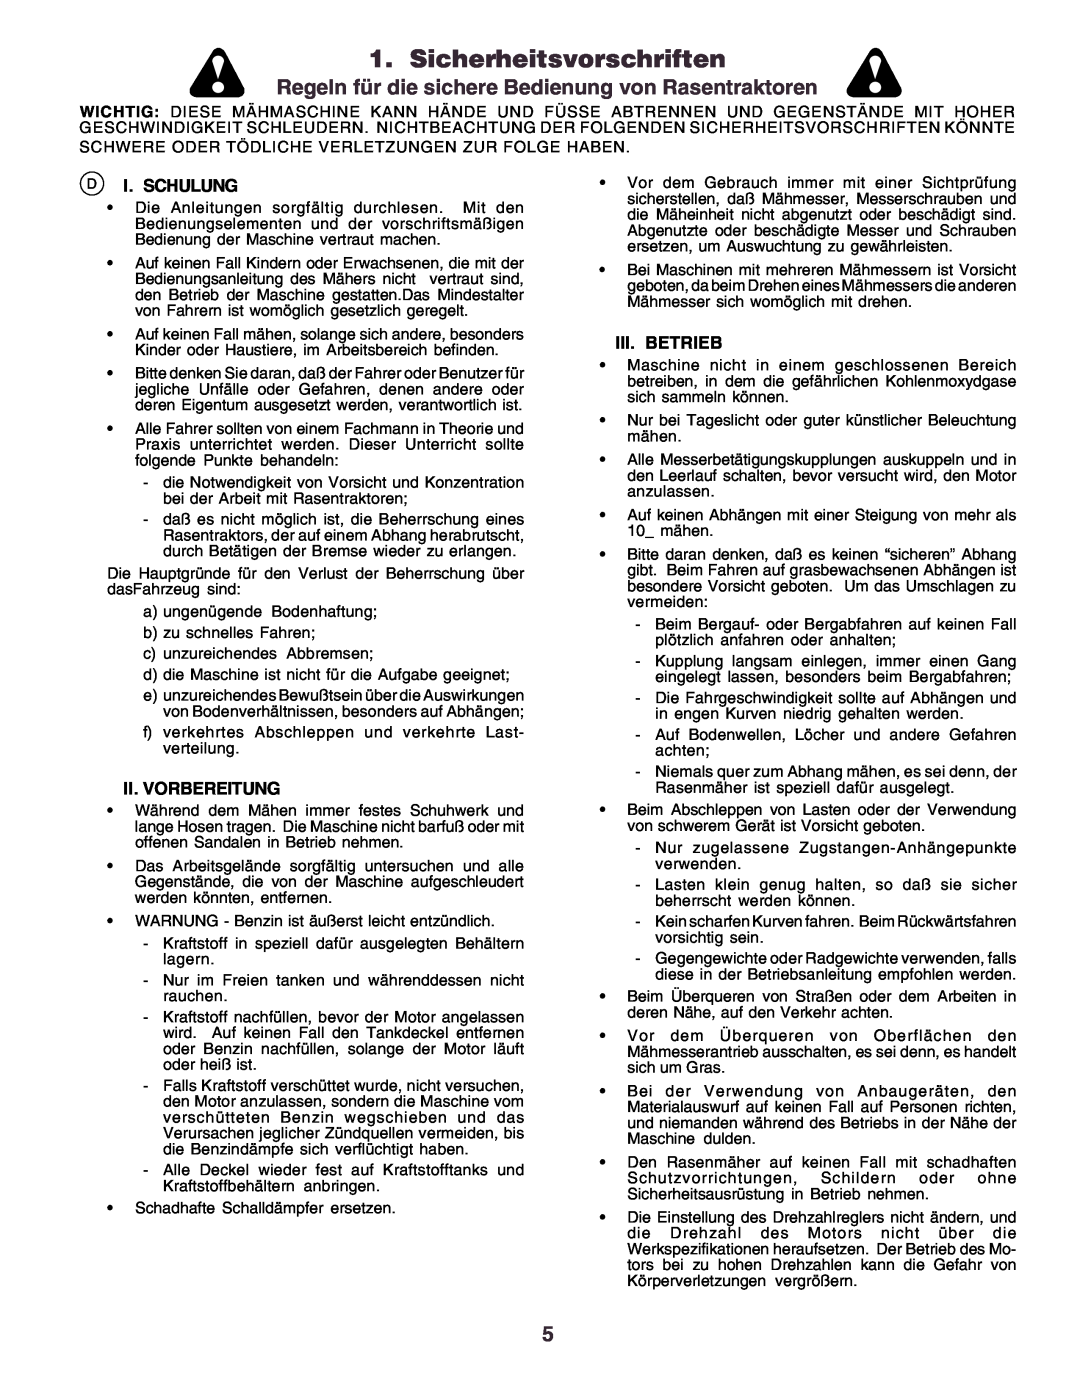 Husqvarna CT130 Sicherheitsvorschriften, Regeln für die sichere Bedienung von Rasentraktoren, I. Schulung, Iii. Betrieb 